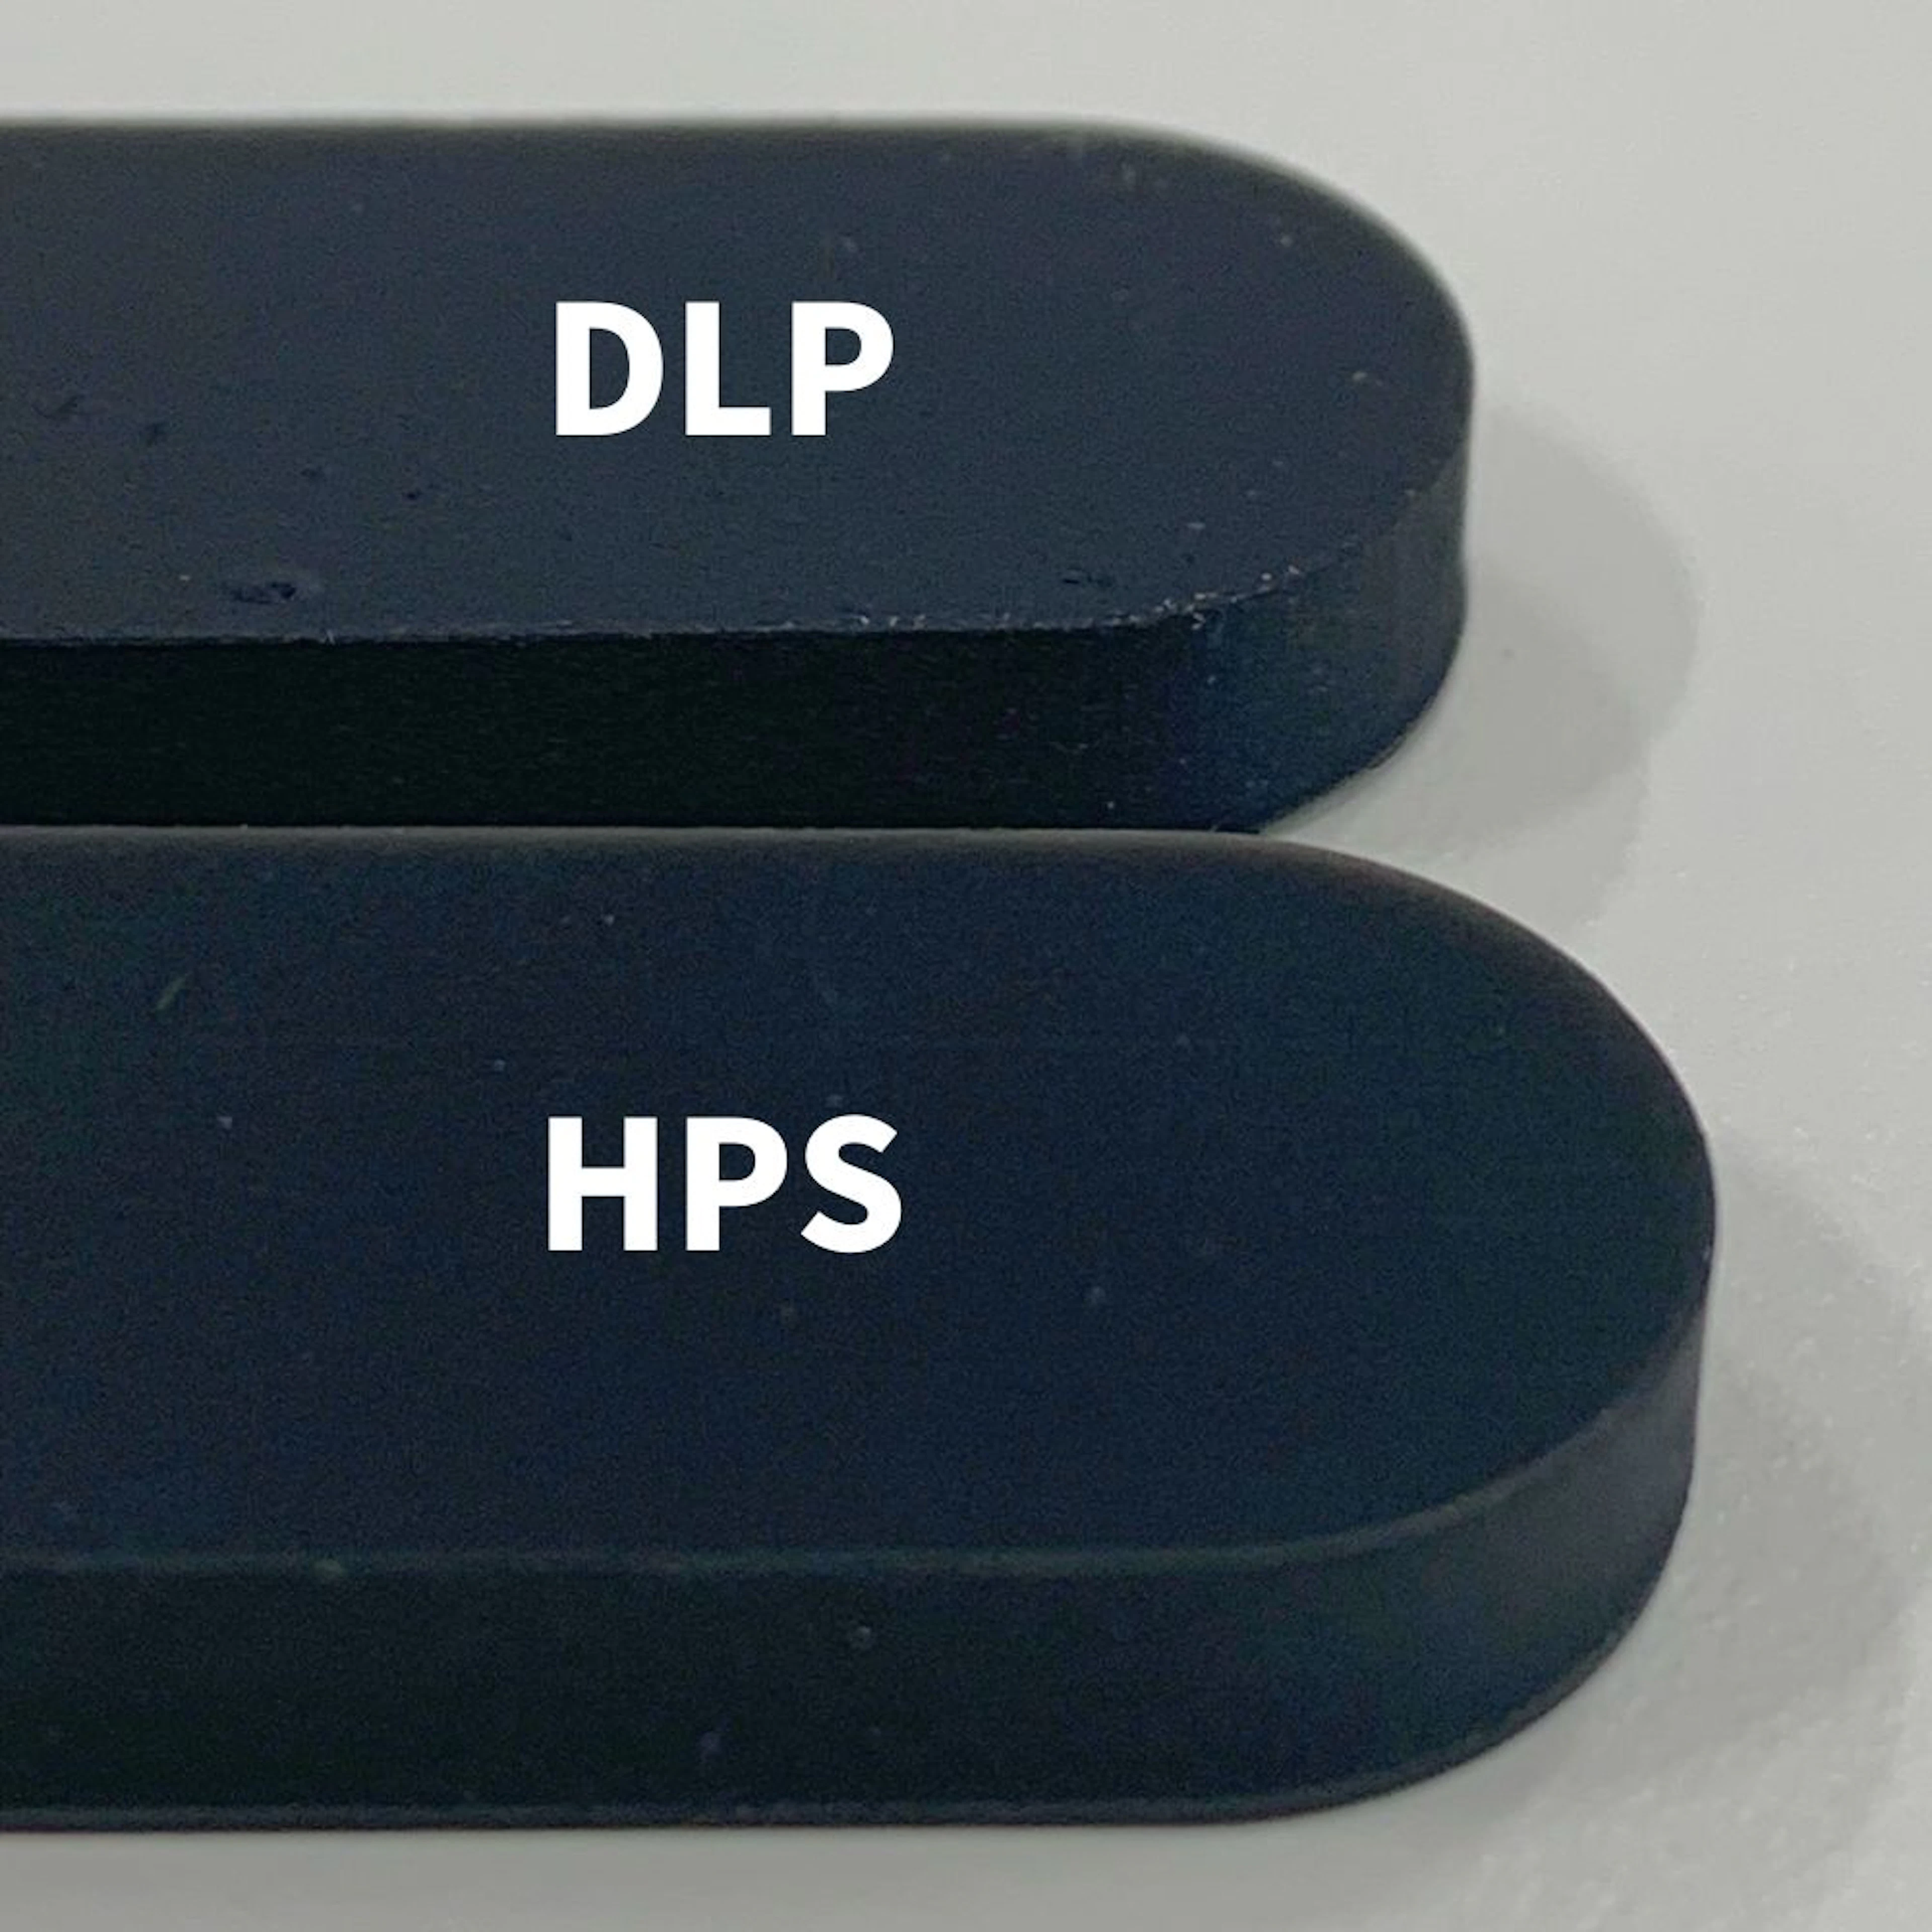 同素材でDLPとHPSを比較。HPSはエッジが立っており、より表面が滑らかである